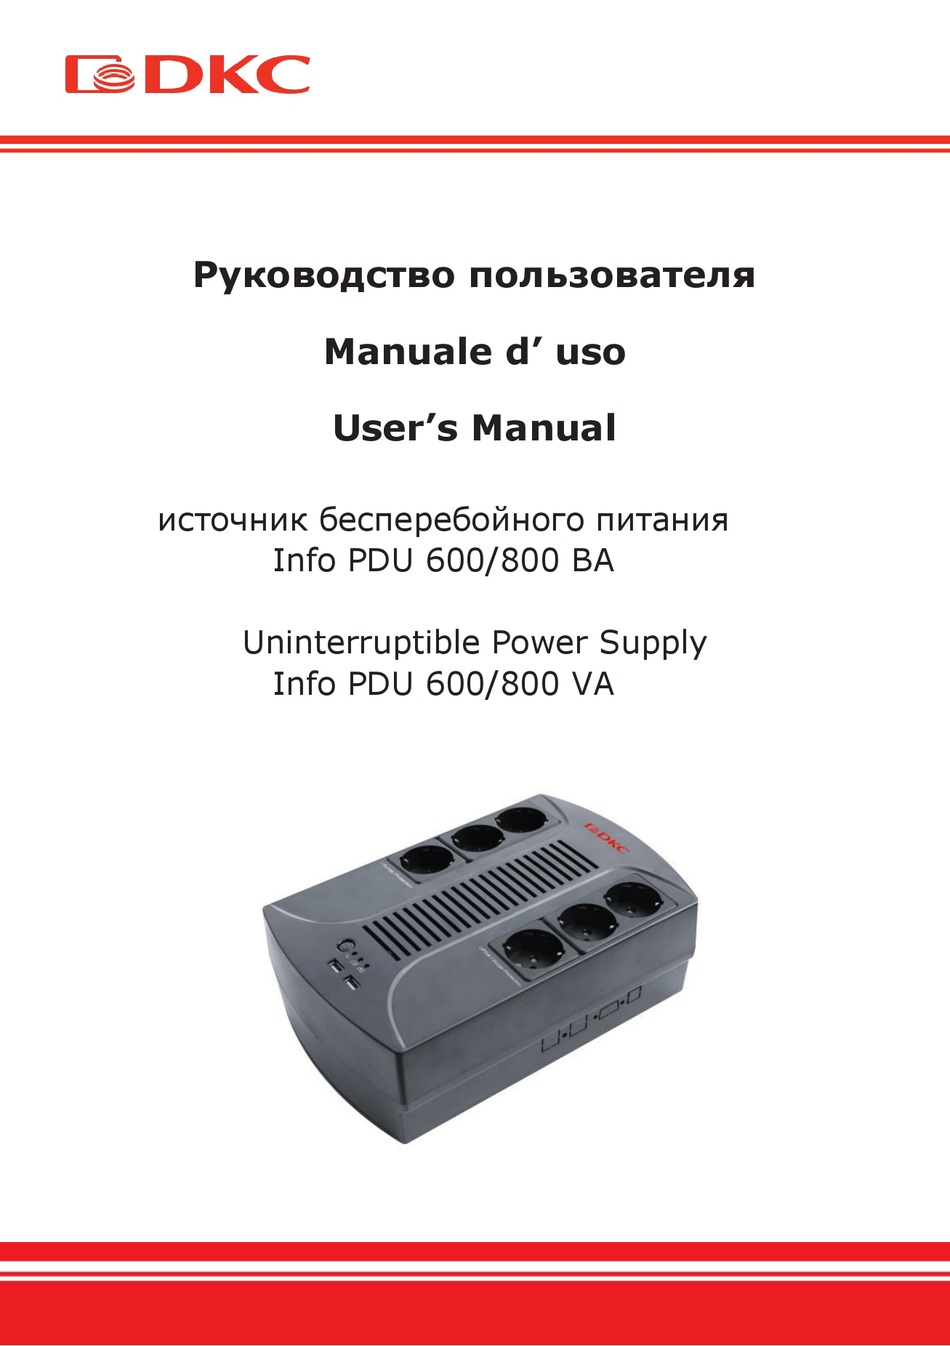 DKC INFOPDU600 USER MANUAL Pdf Download | ManualsLib